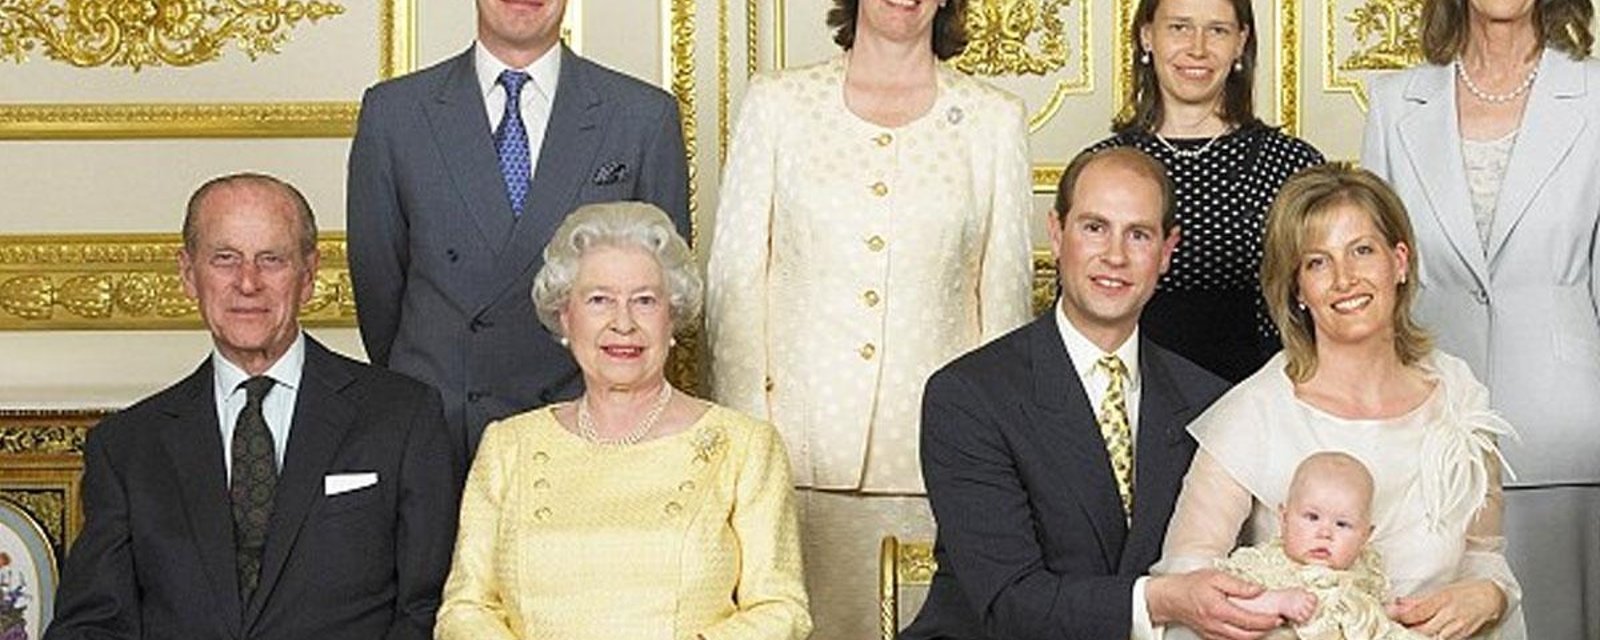 Un membre de la famille royale britannique affirme enfin son homosexualité!